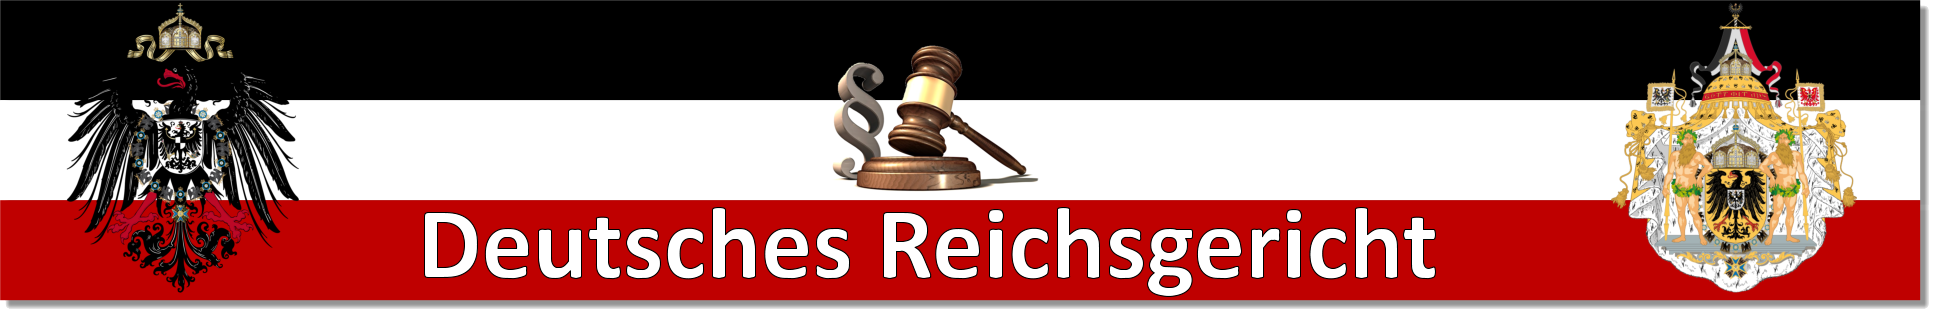 Deutsches Reichsgericht